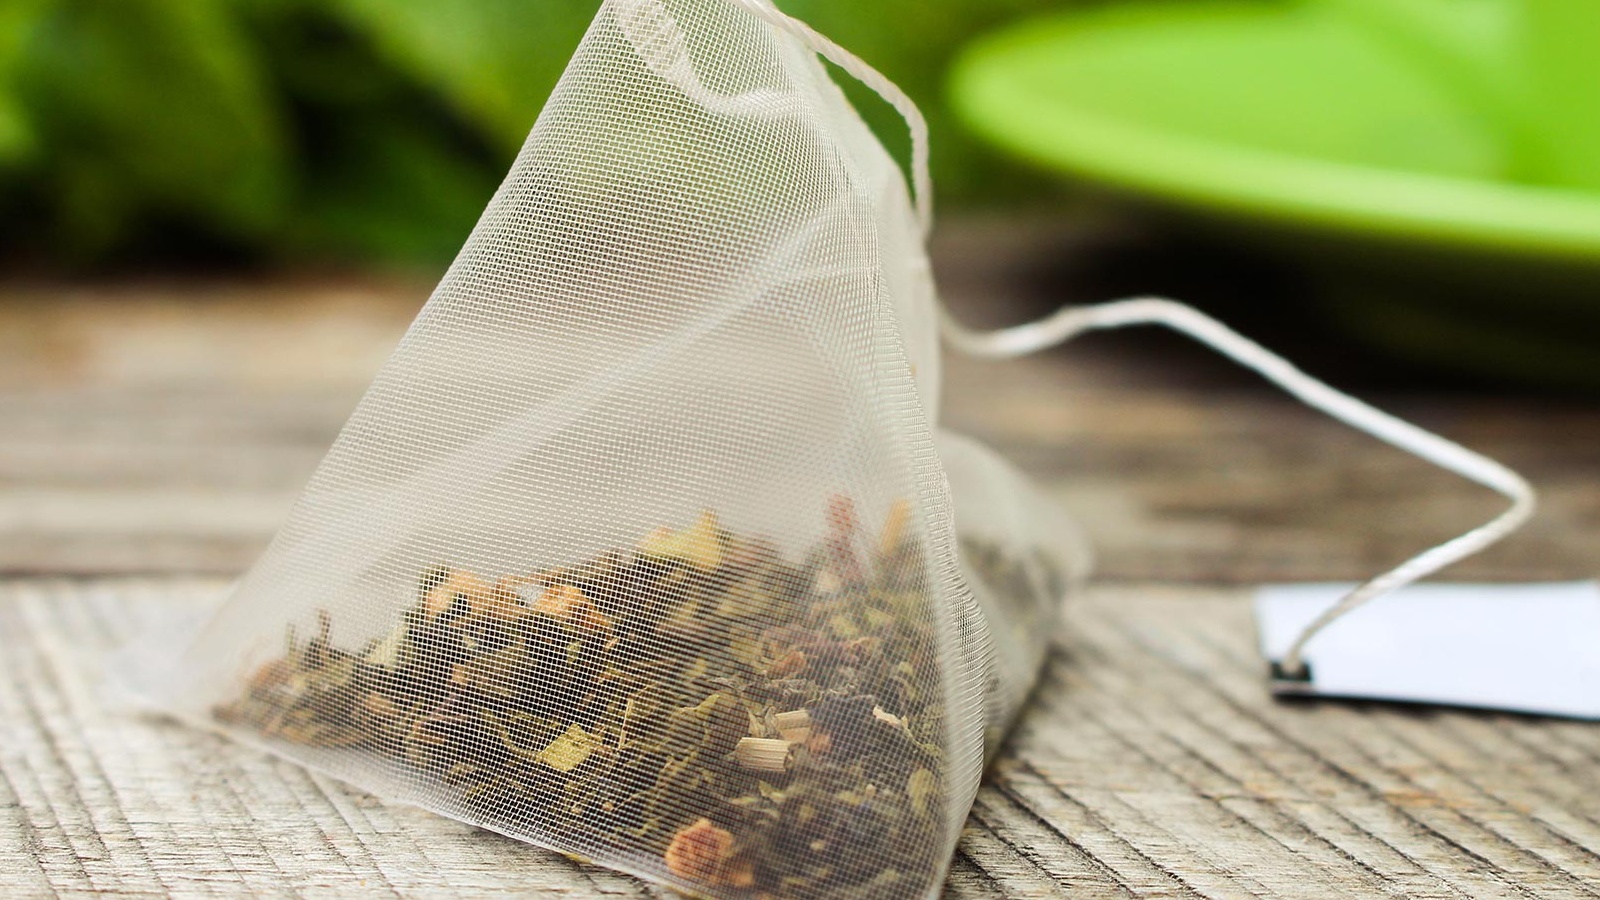 Túi trà ngâm trong nước nóng hay lạnh để trị thâm mắt hiệu quả hơn?
